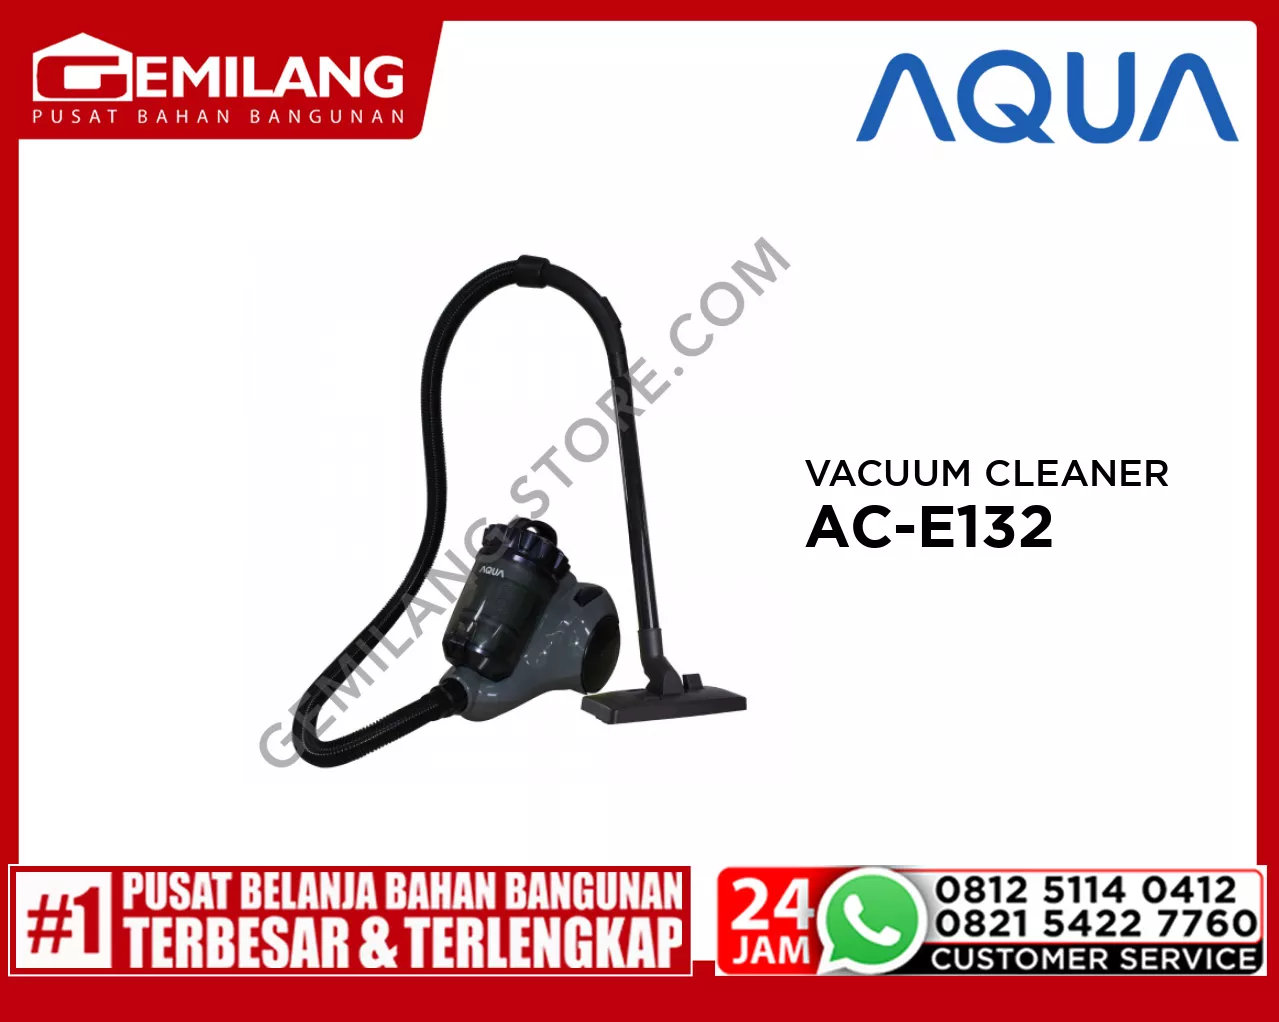 AQUA VACUUM CLEANER AC-E132